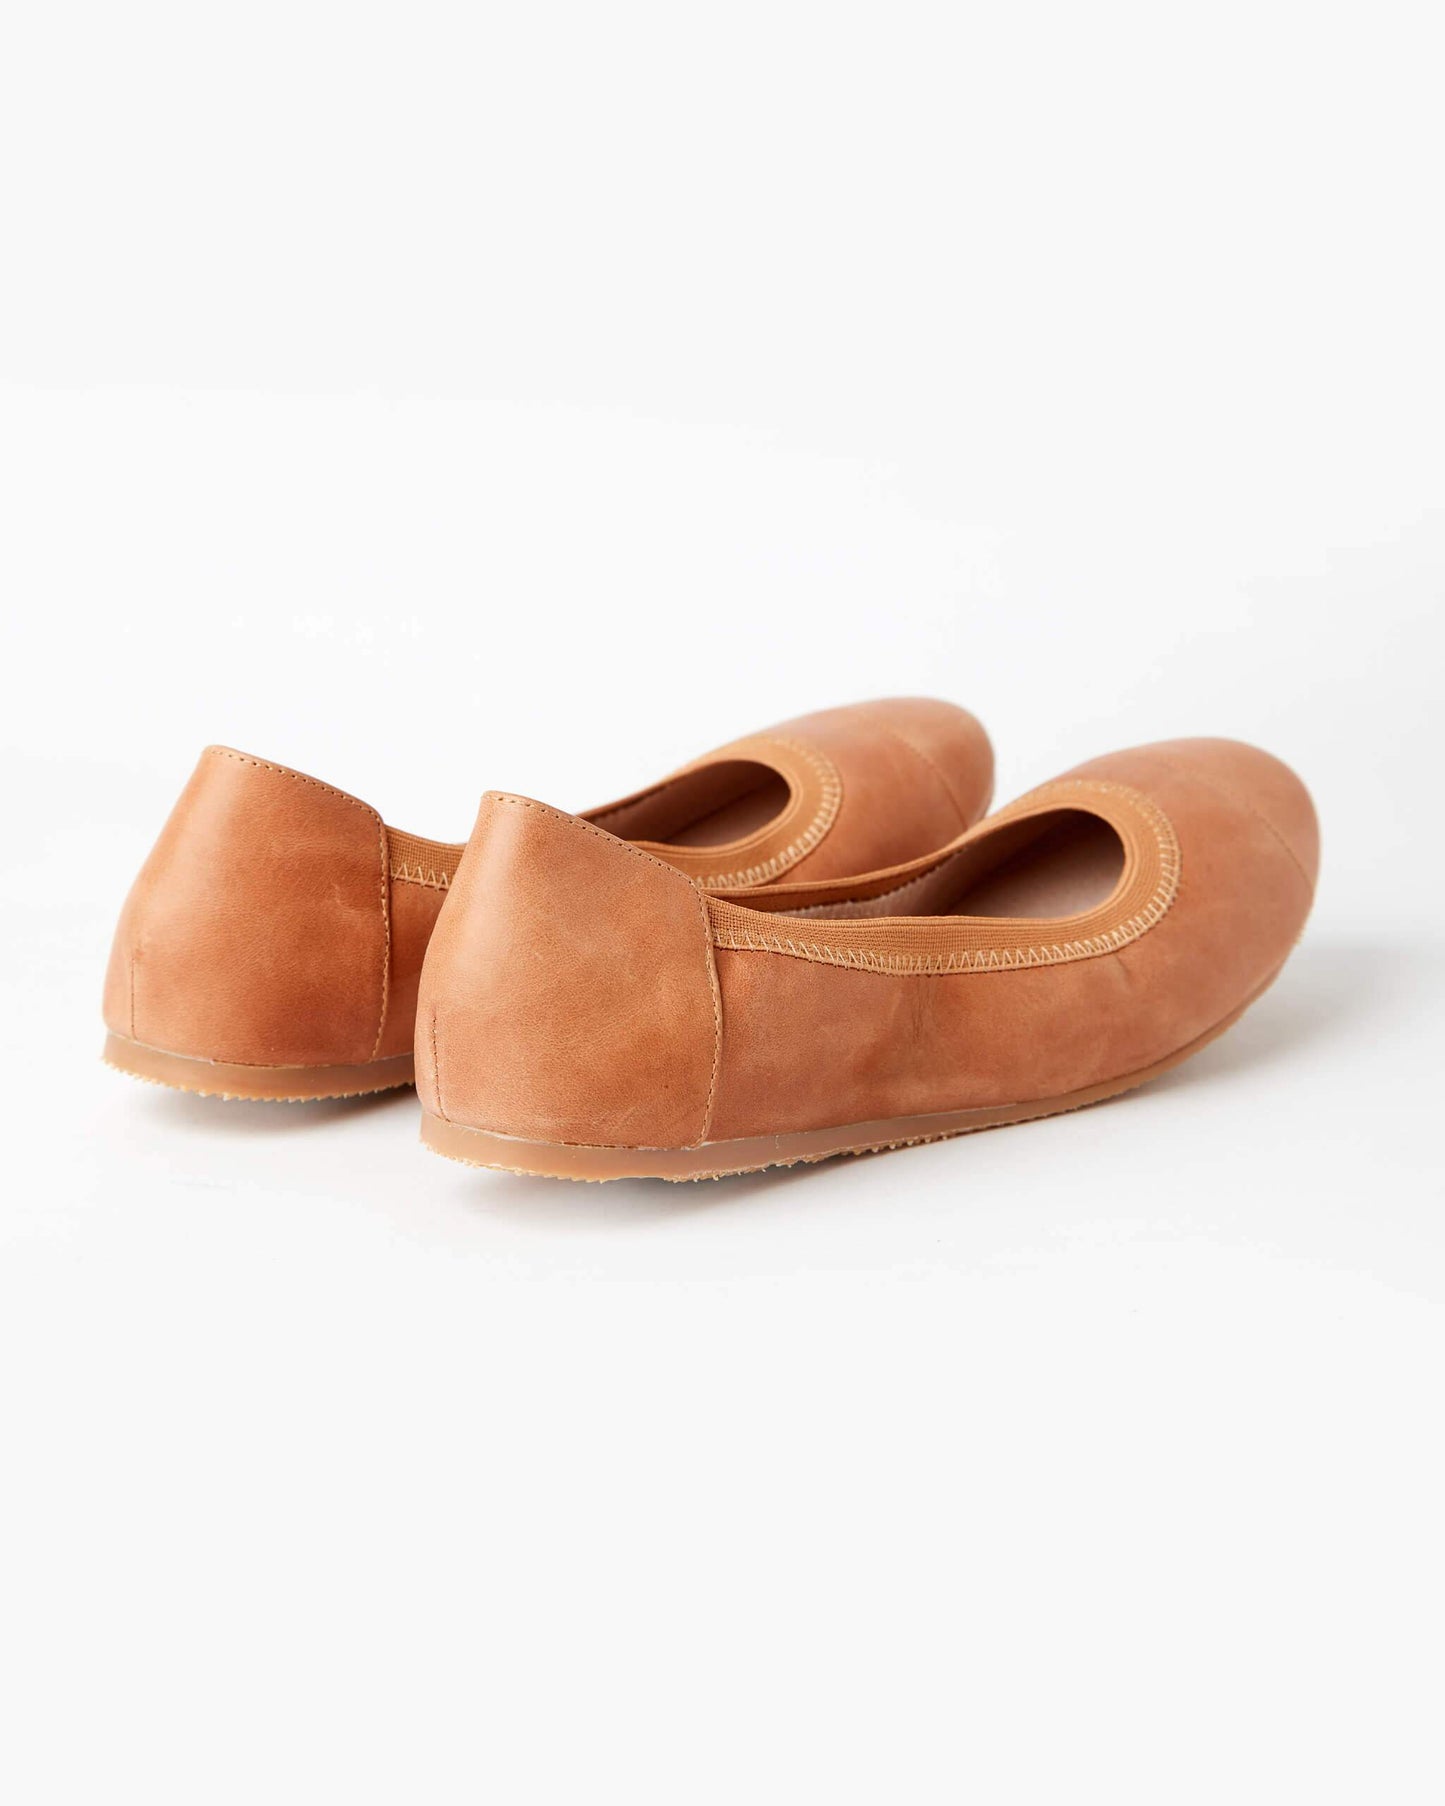 AVA BALLET FLAT  TAN - WALNUT MELBOURNE - 36, 37, 38, 39, 40, 41, 42, 43, BALLET FLAT, TAN, womens footwear - Stomp Shoes Darwin